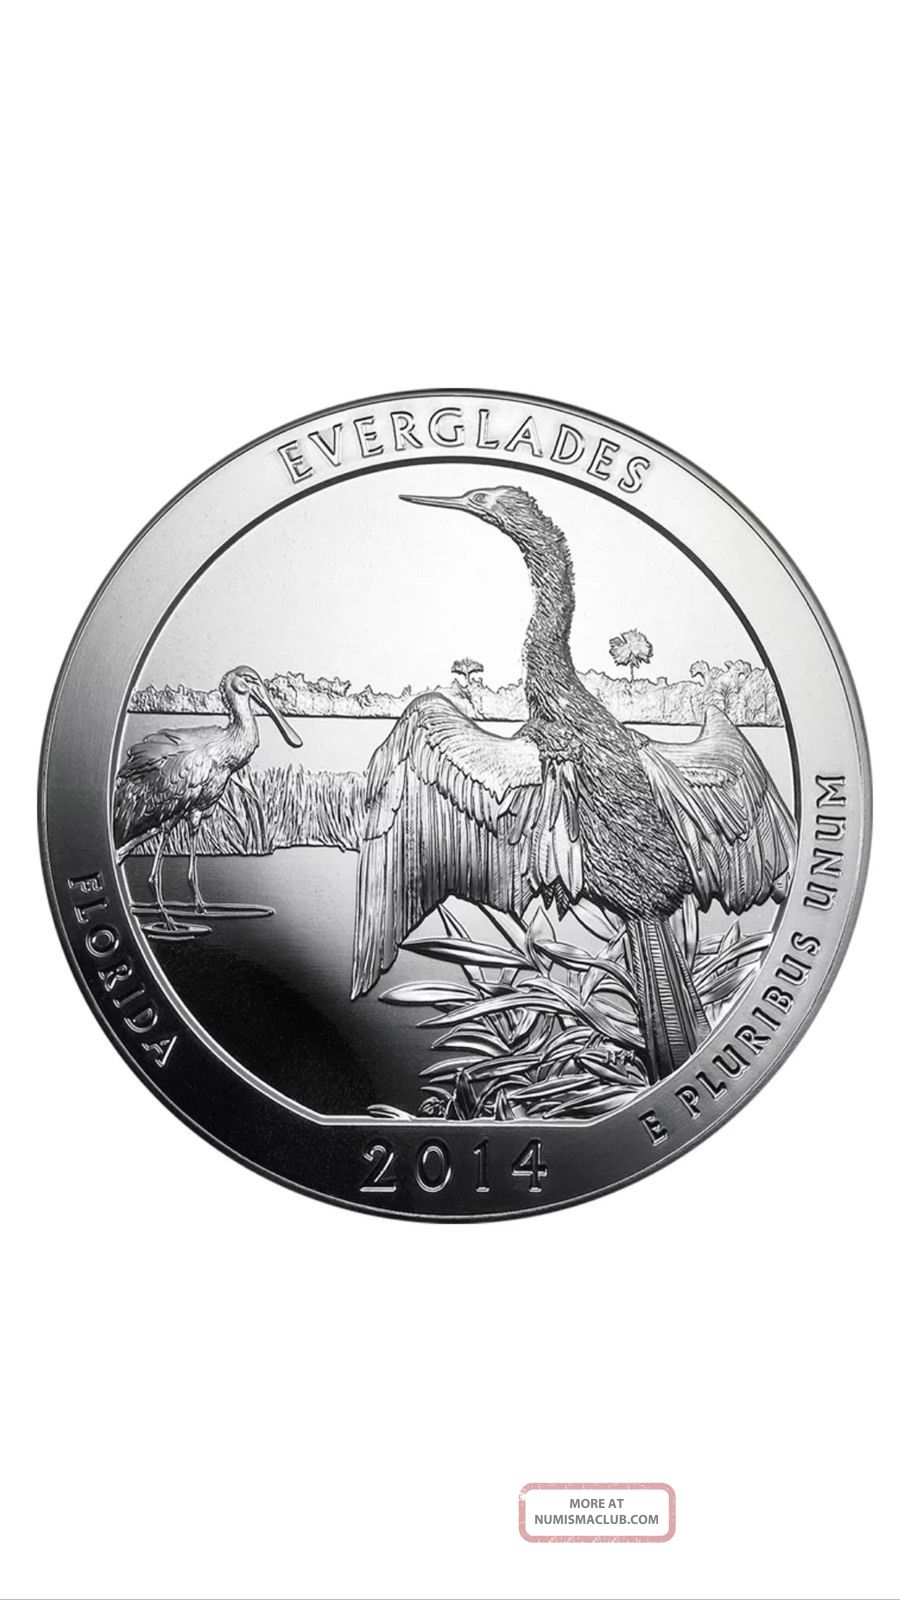 2014 5 Oz Silver Atb Everglades National Park Coin